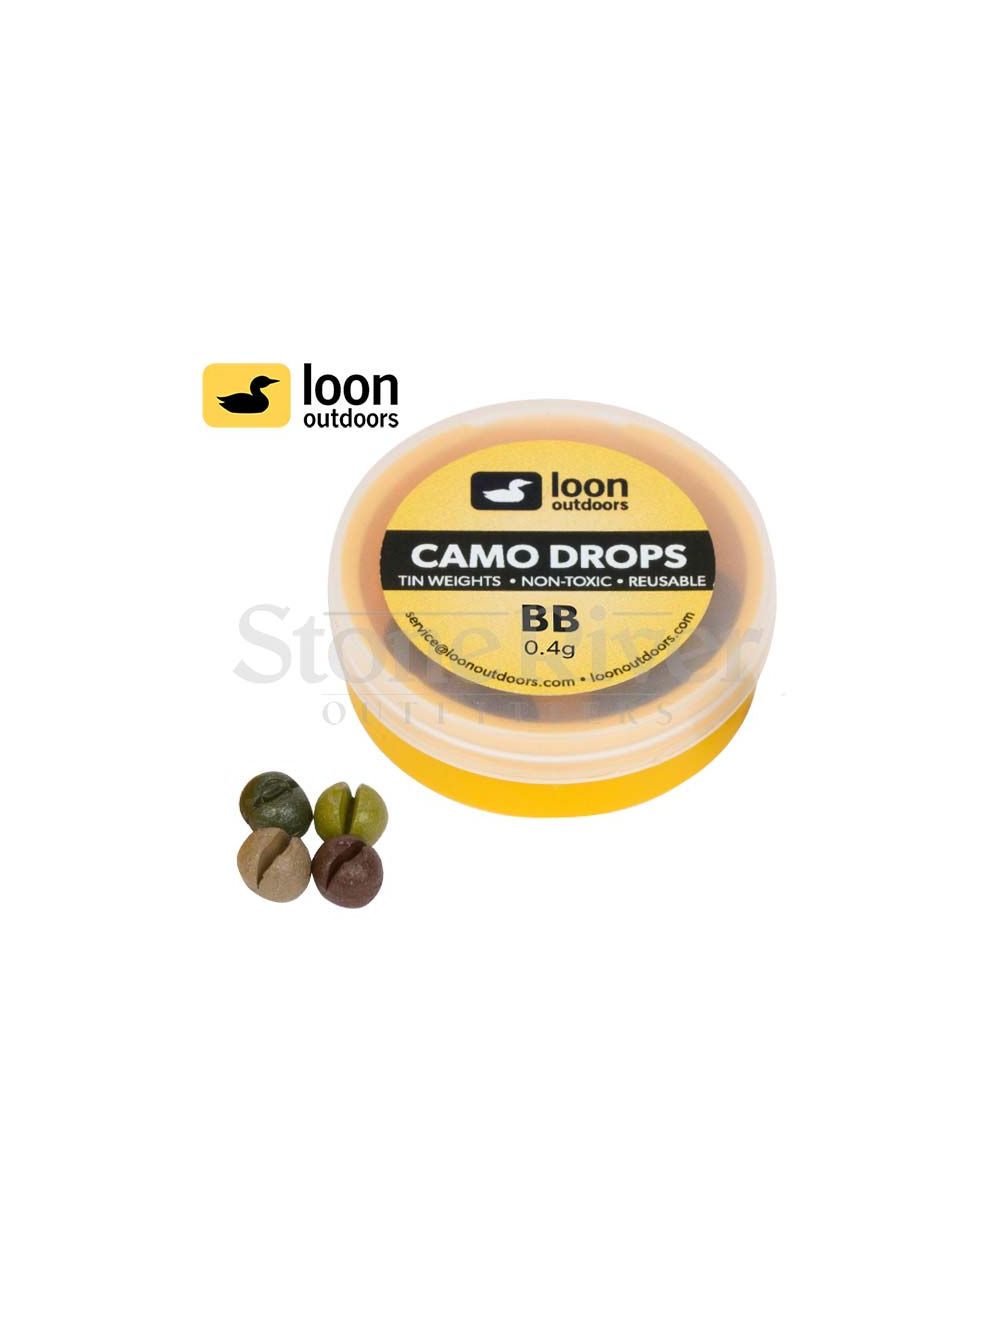 Loon Camo Drops 